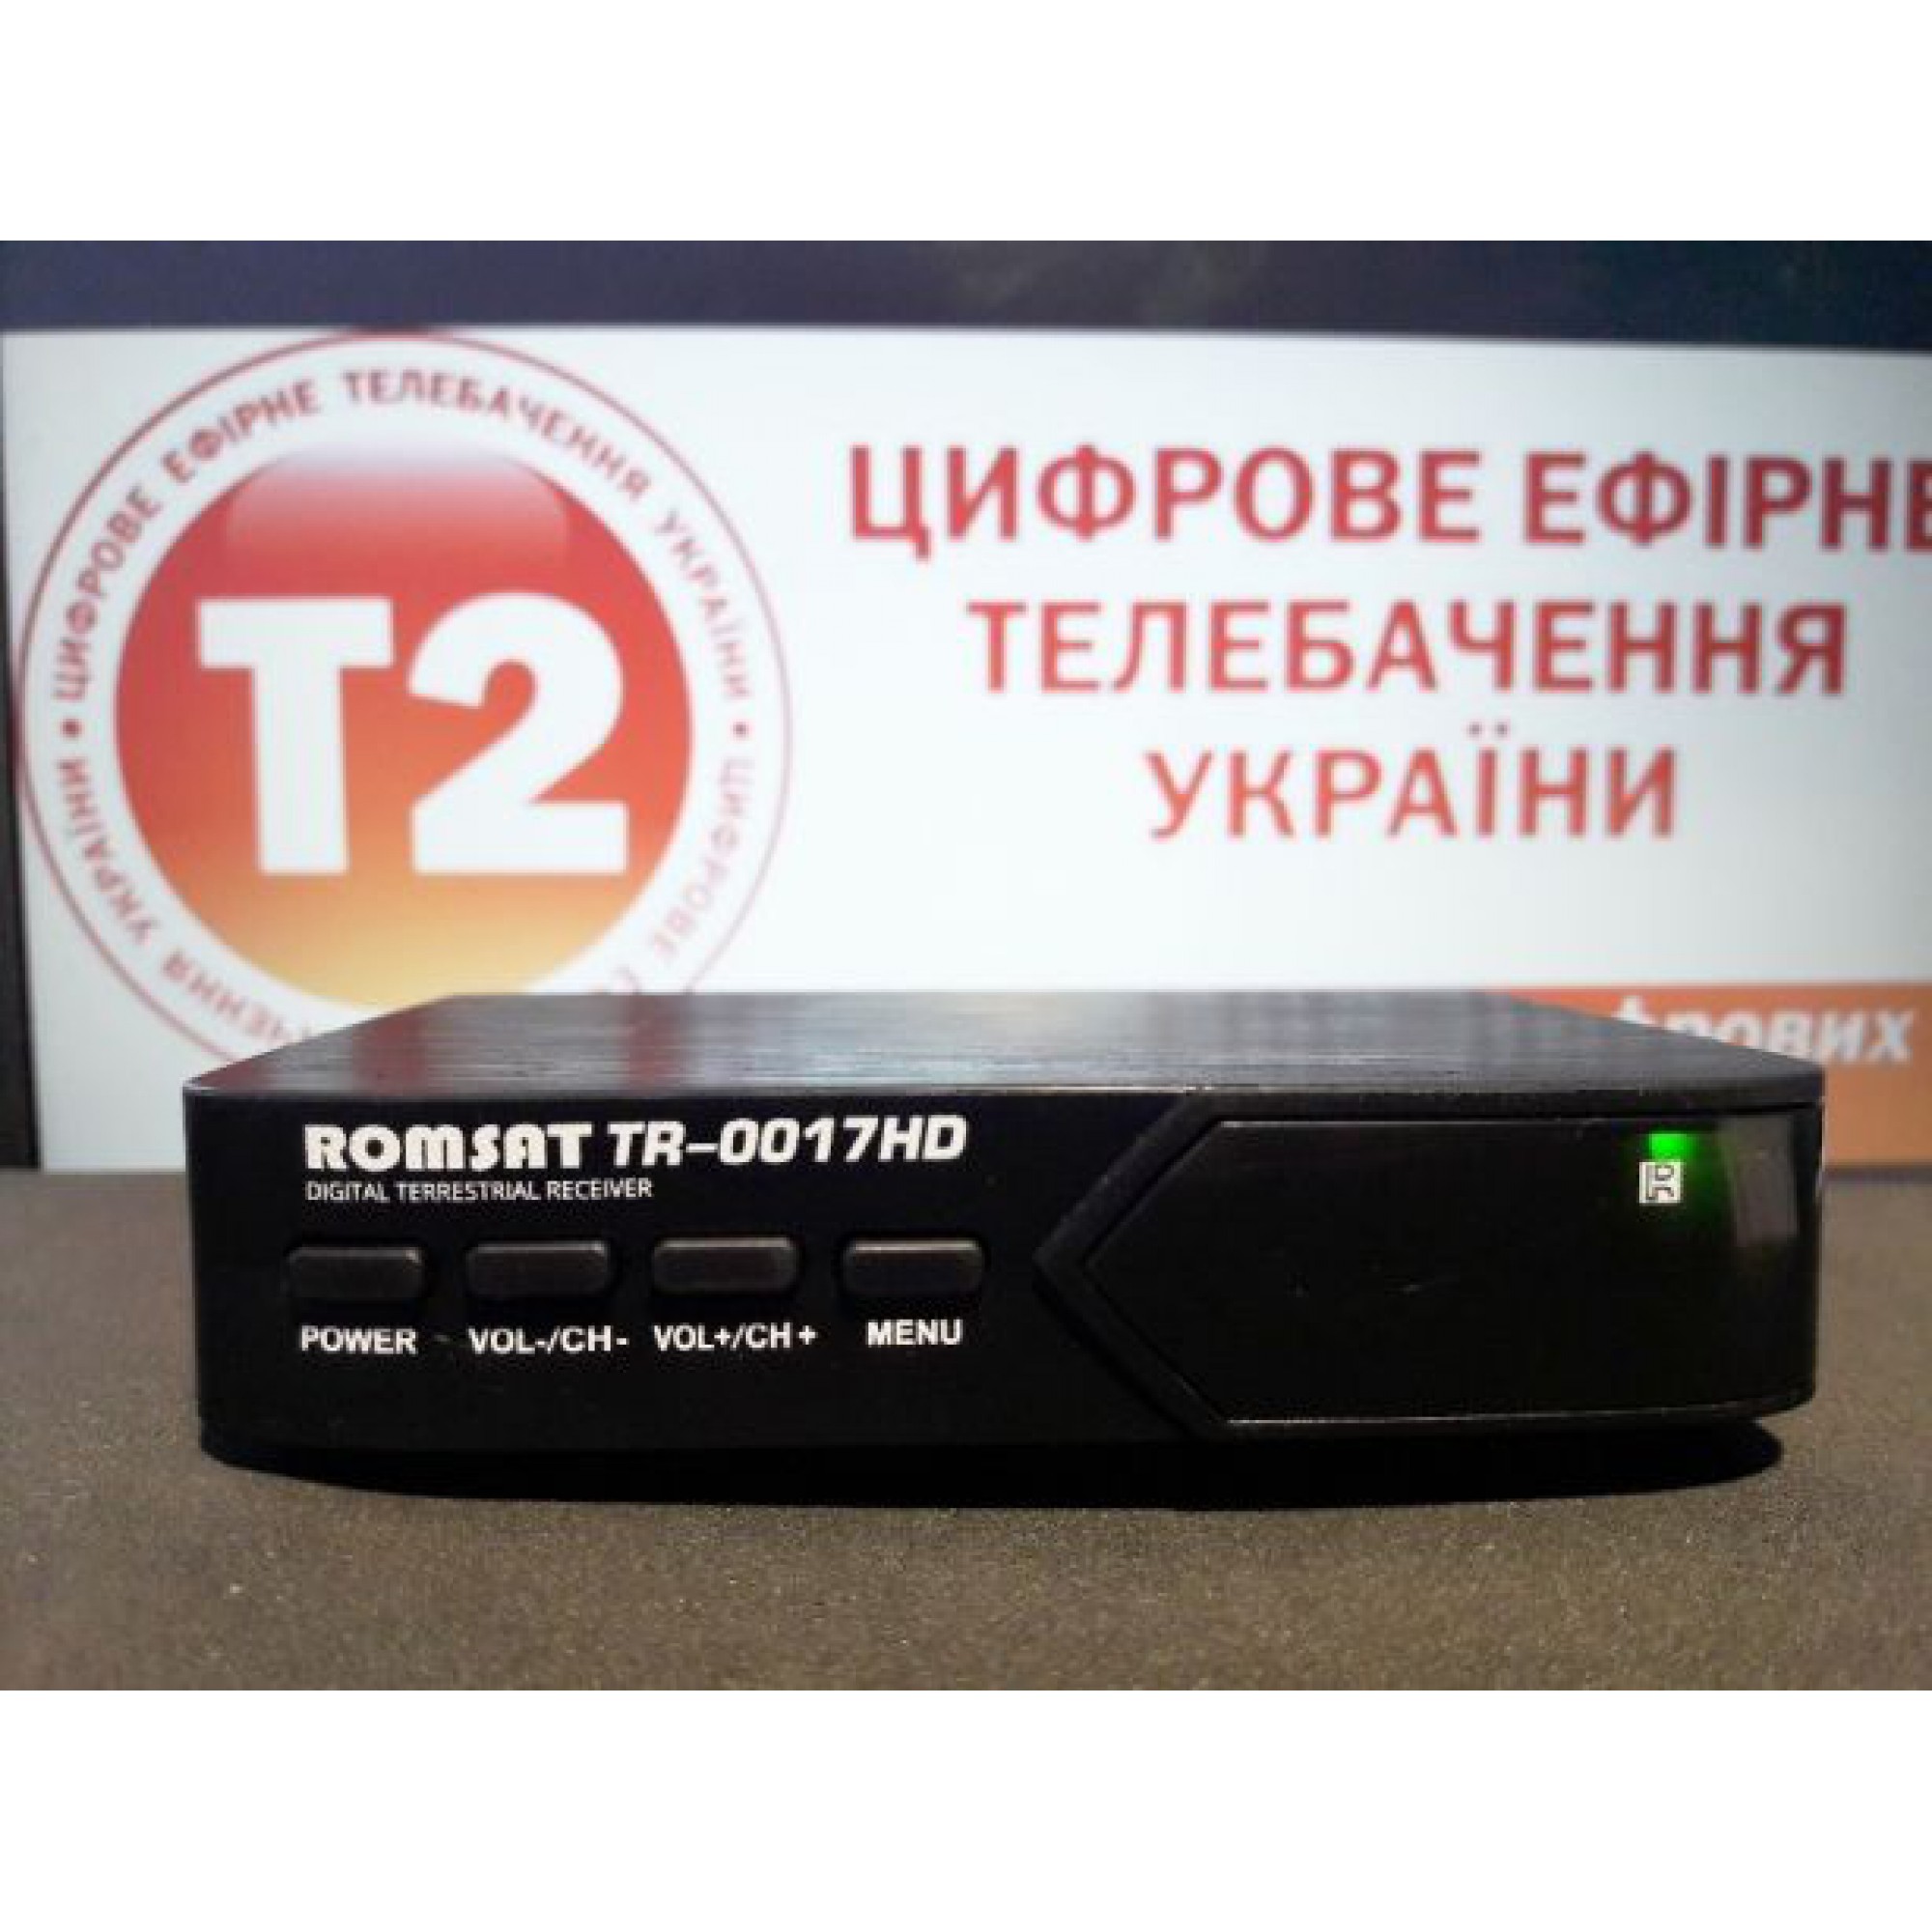 Т2-приставка Romsat TR-1017HD